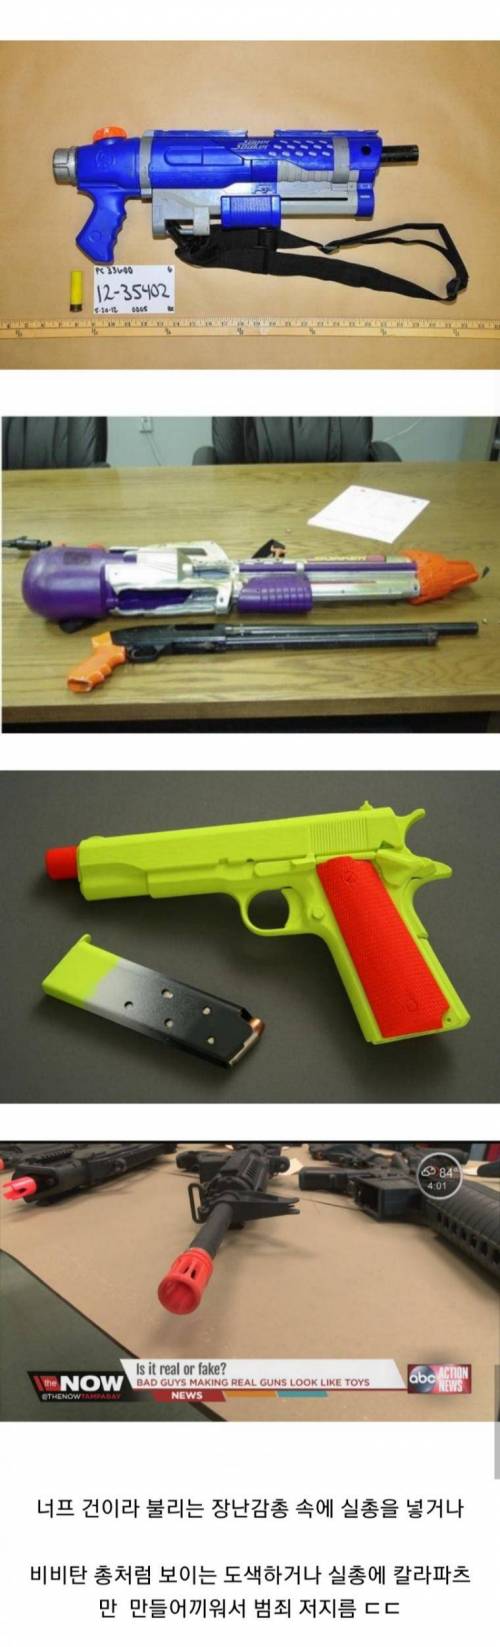 미국에선 경찰들이 장난감 총이라고 안봐주는 이유.jpg